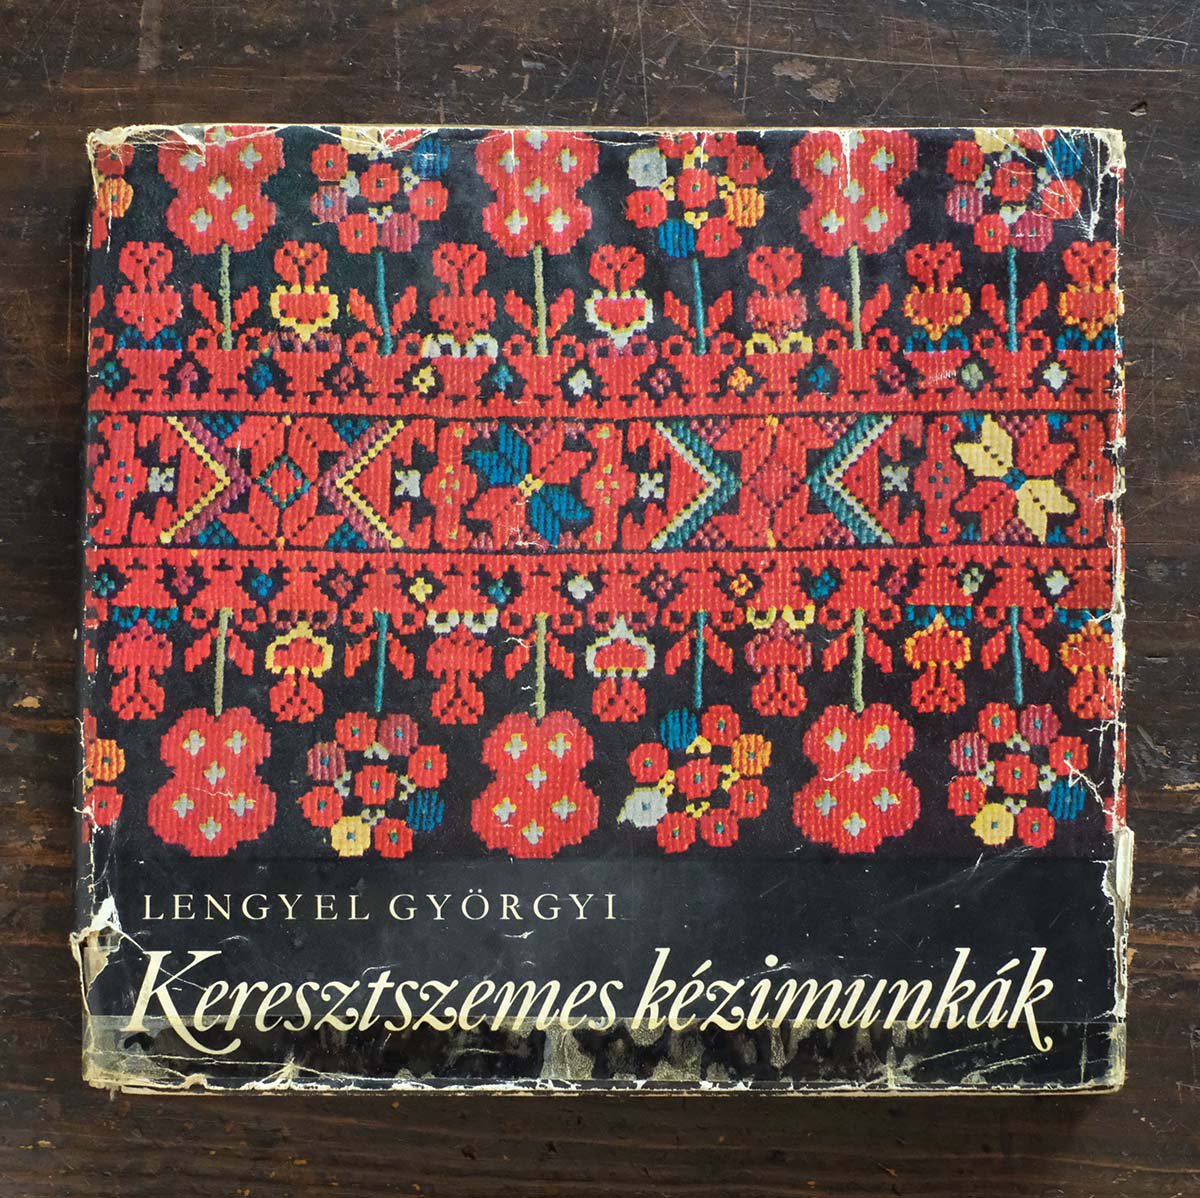 ハンガリーのクロスステッチ図案集『Keresztszemes kezimunkak』 チャルカお買いものサイト／CHARKHA shopping  site